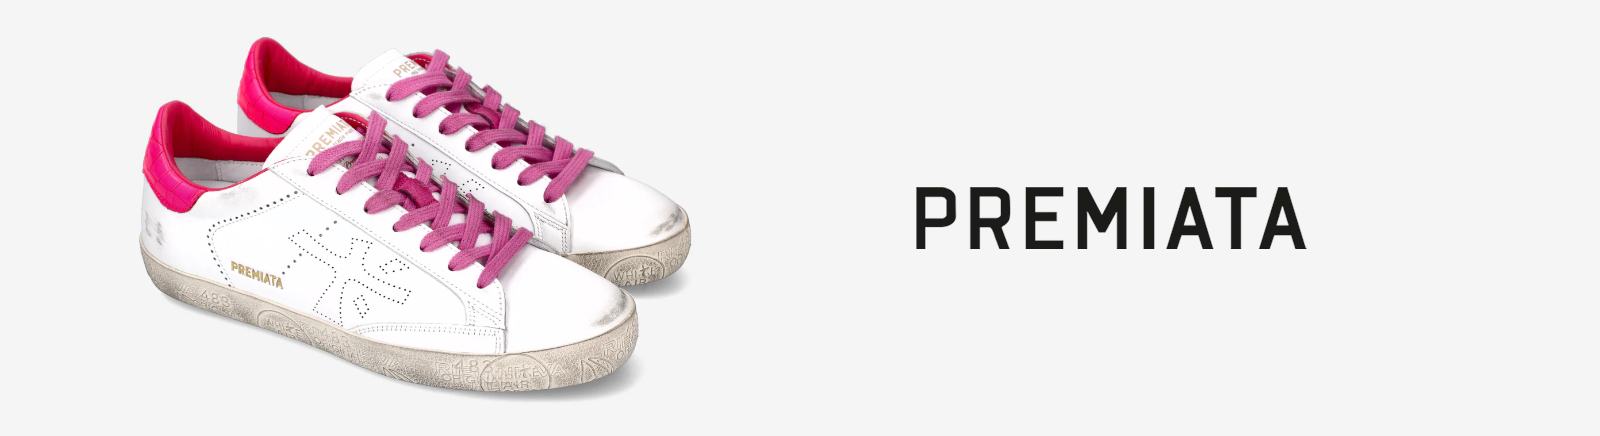 Premiata Kinderschuhe online kaufen im Prange Schuhe Shop